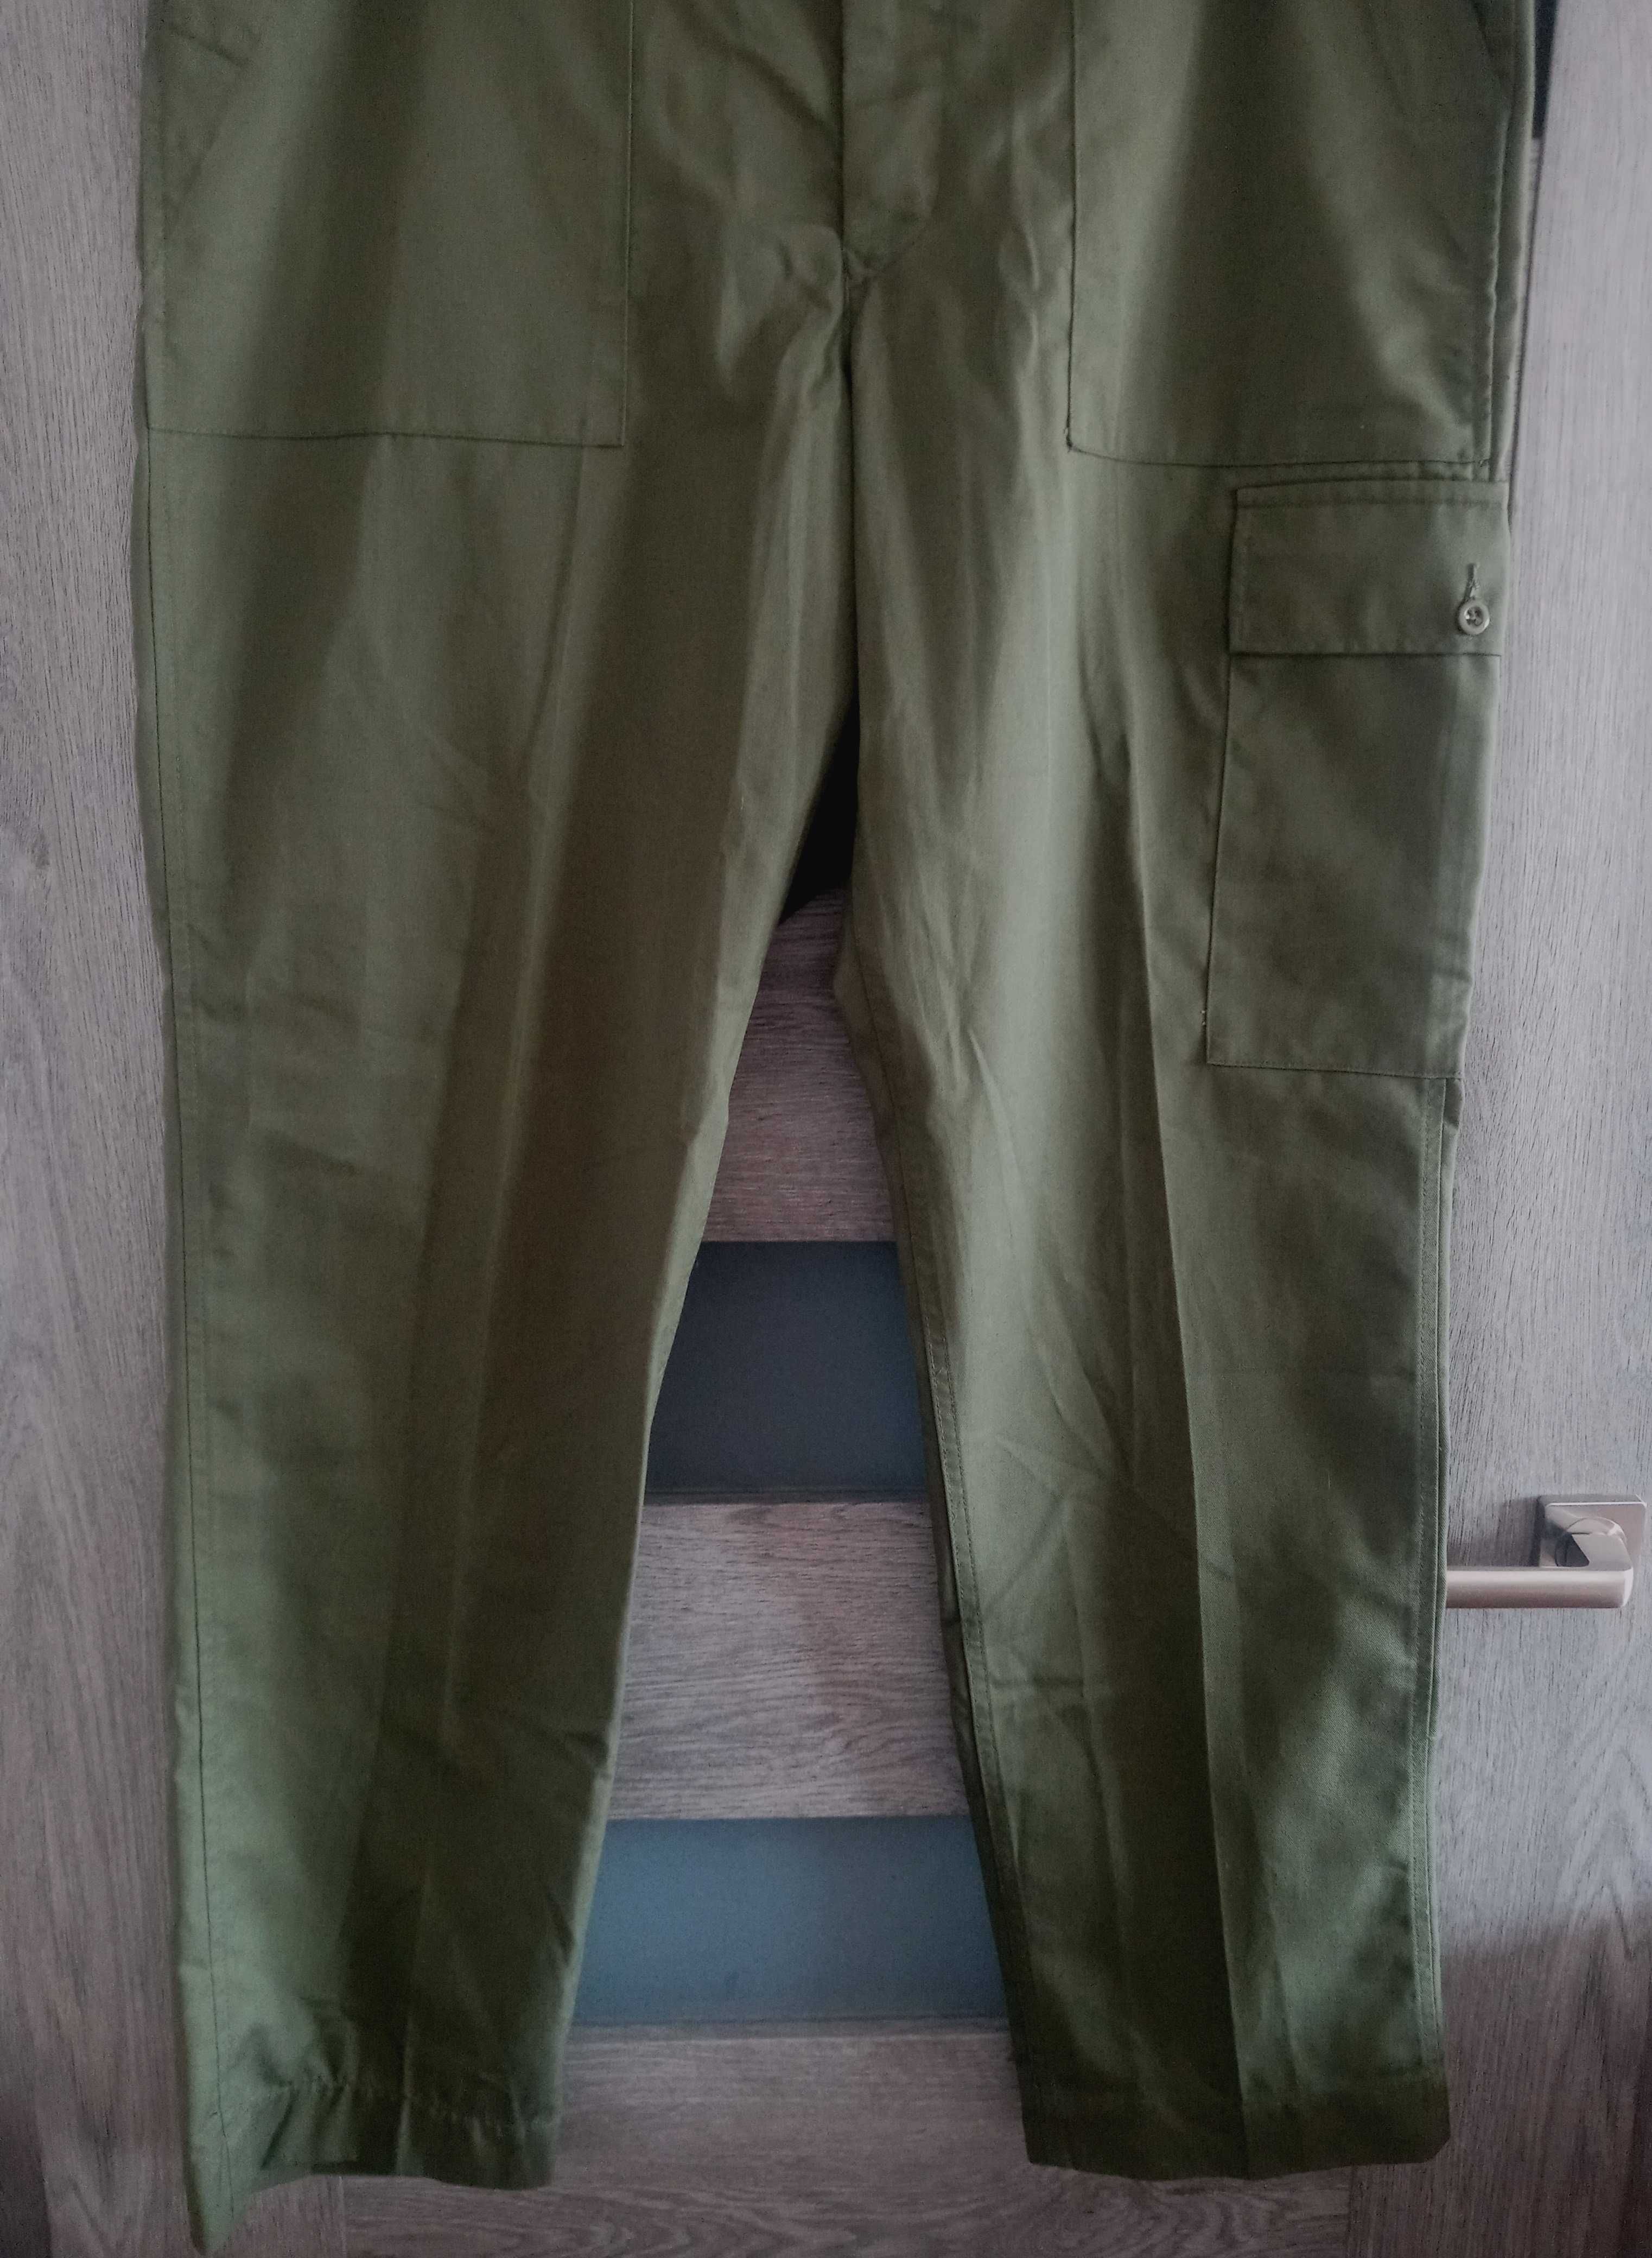 Compton sons & Webb zielone spodnie wojskowe militarne bojówki XL L